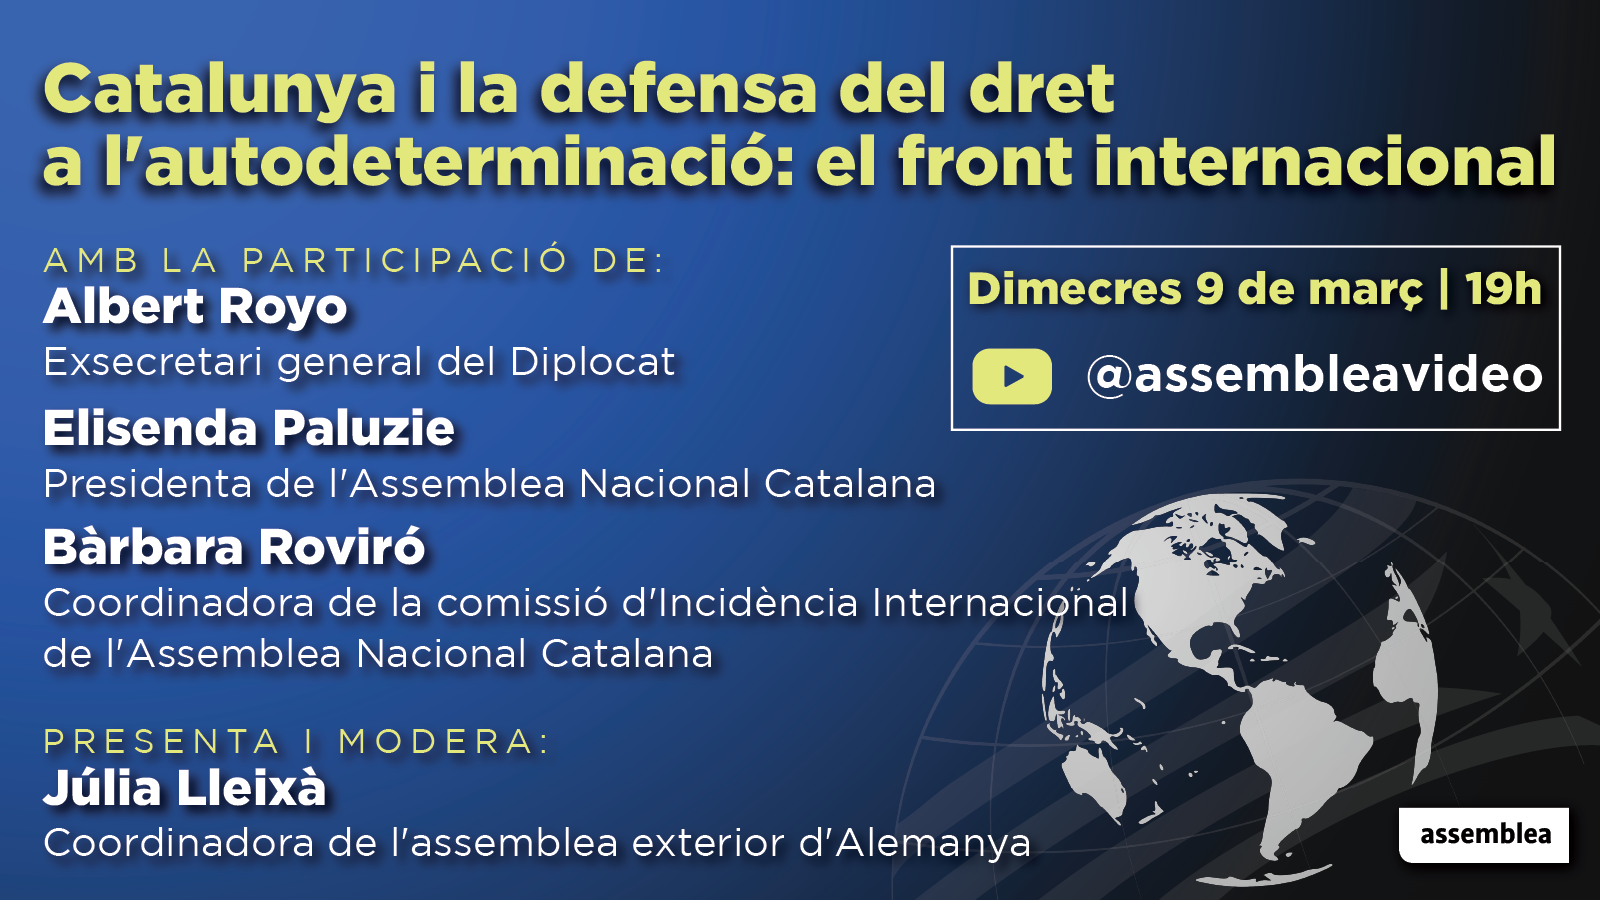 Catalunya i la defensa del dret a l'autodeterminació: el front internacional